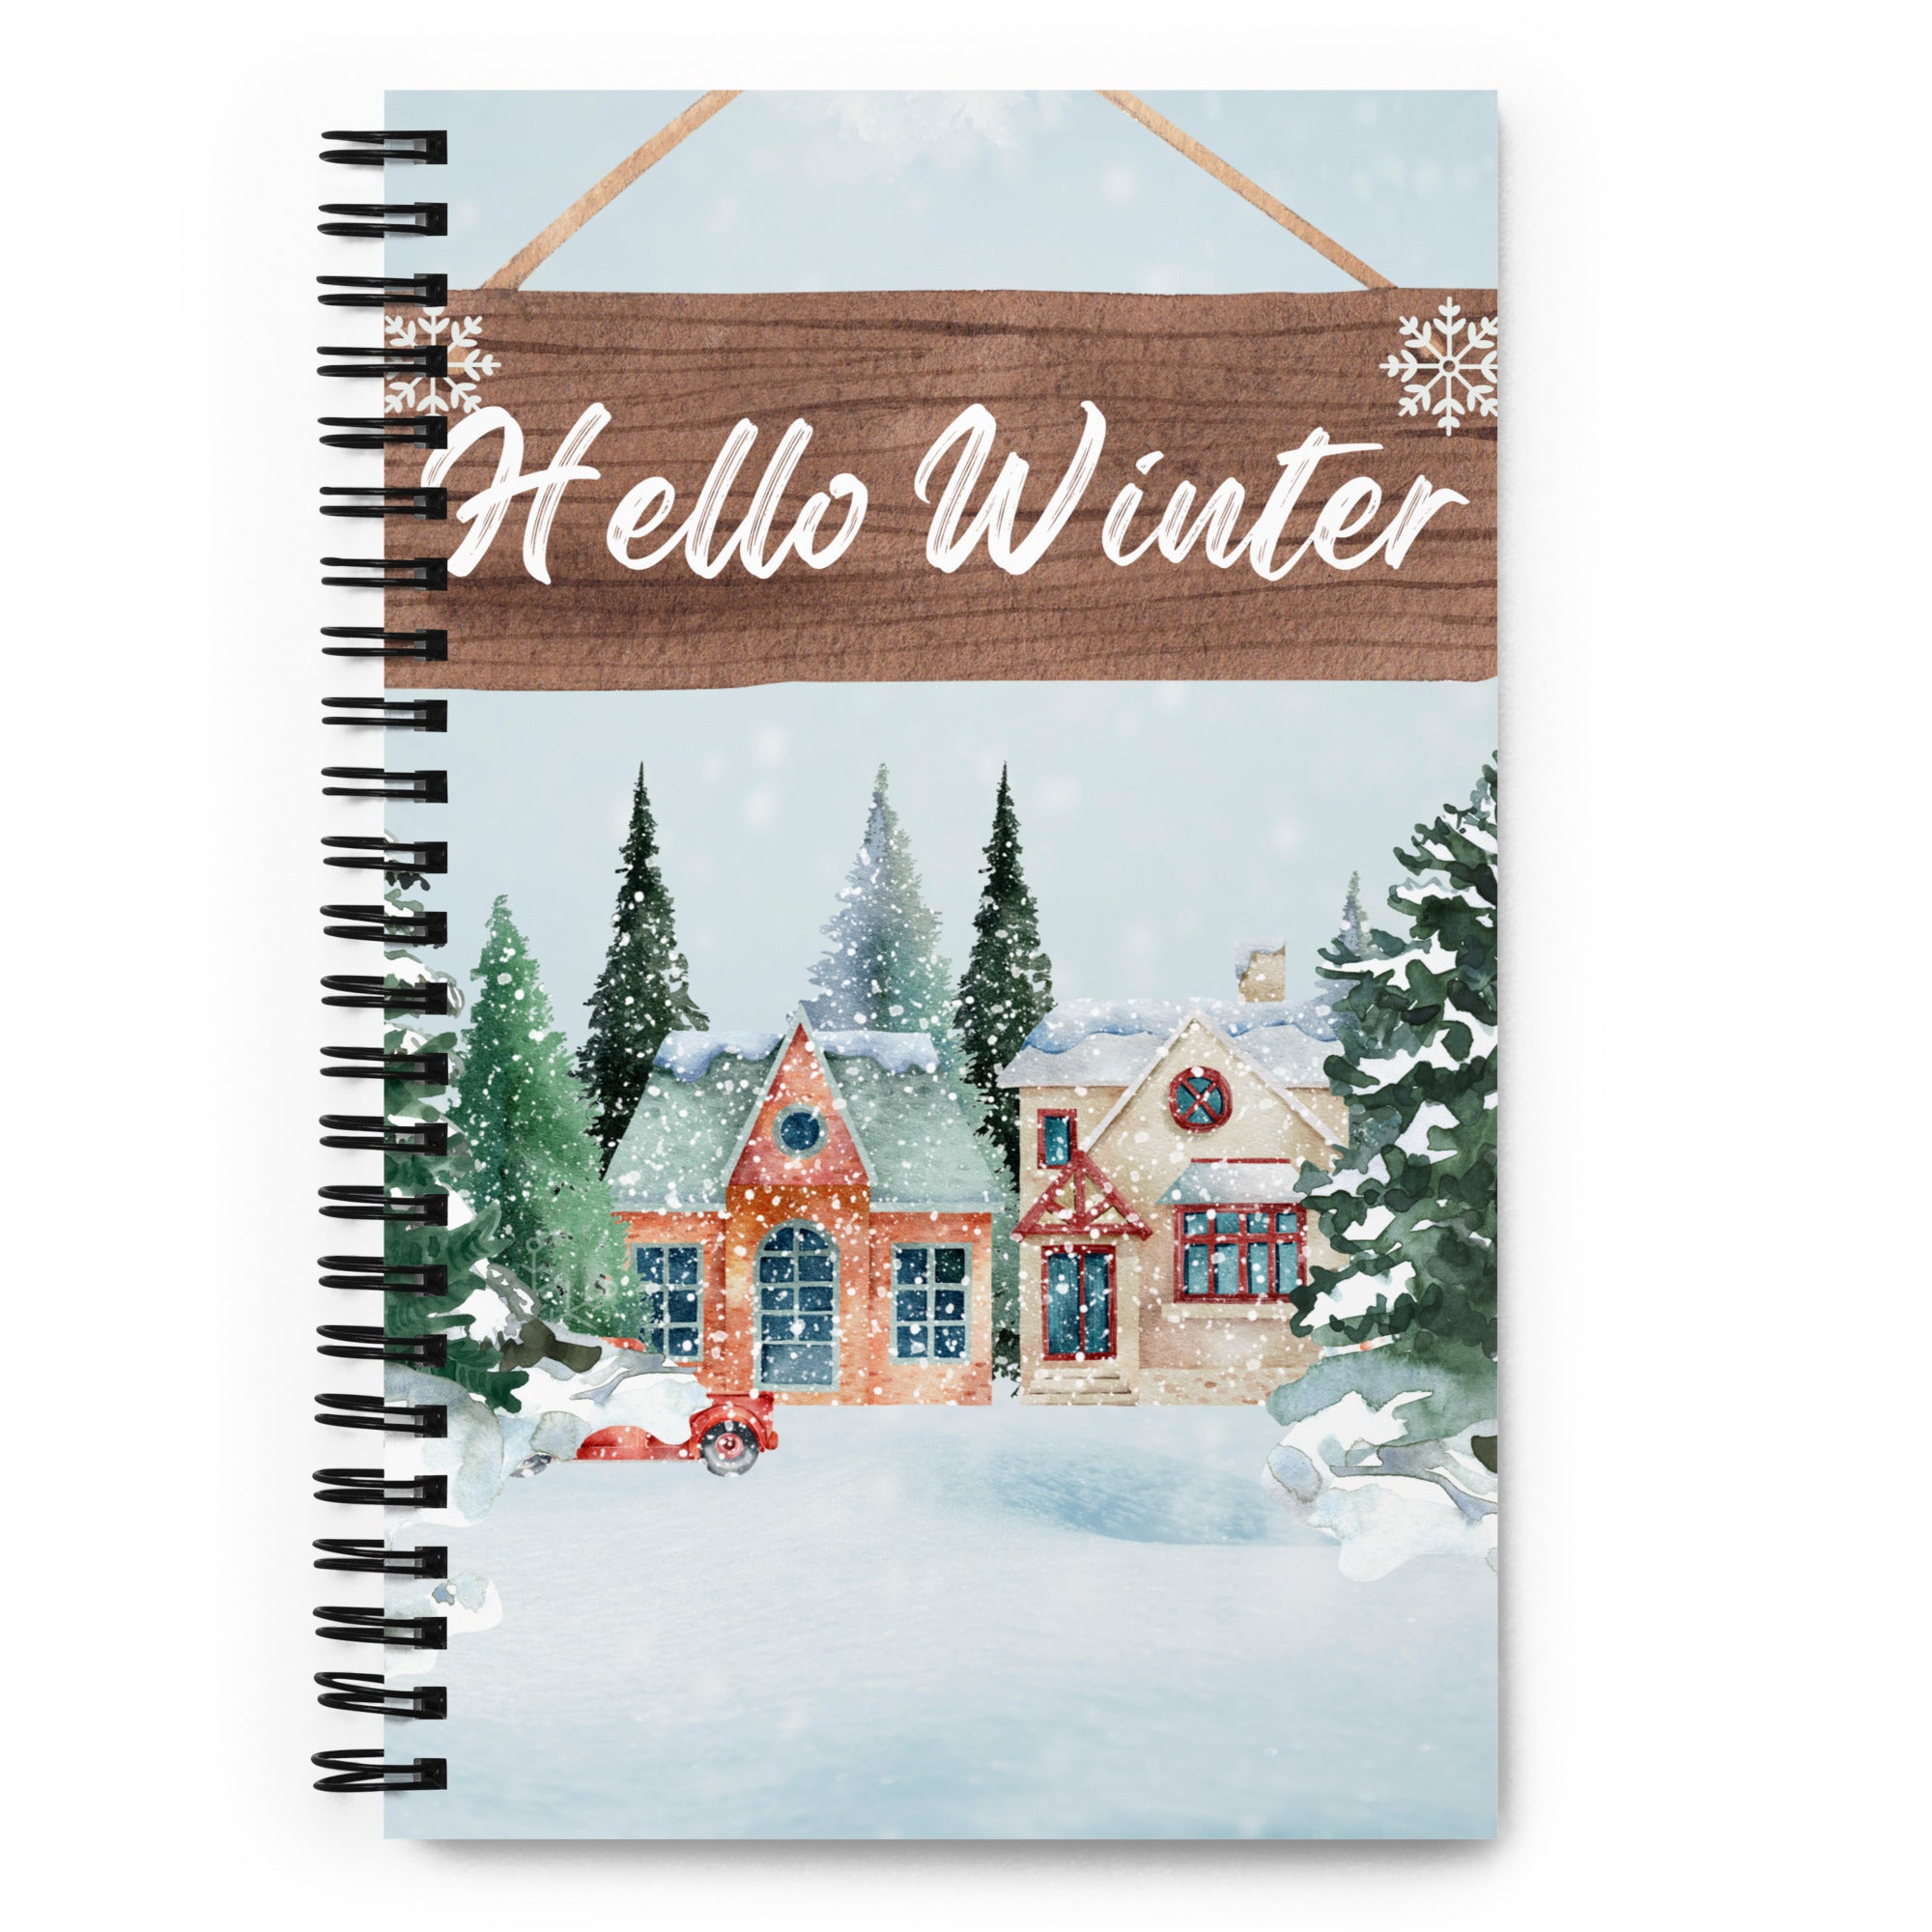 Hello Winter - Spiral Notebook